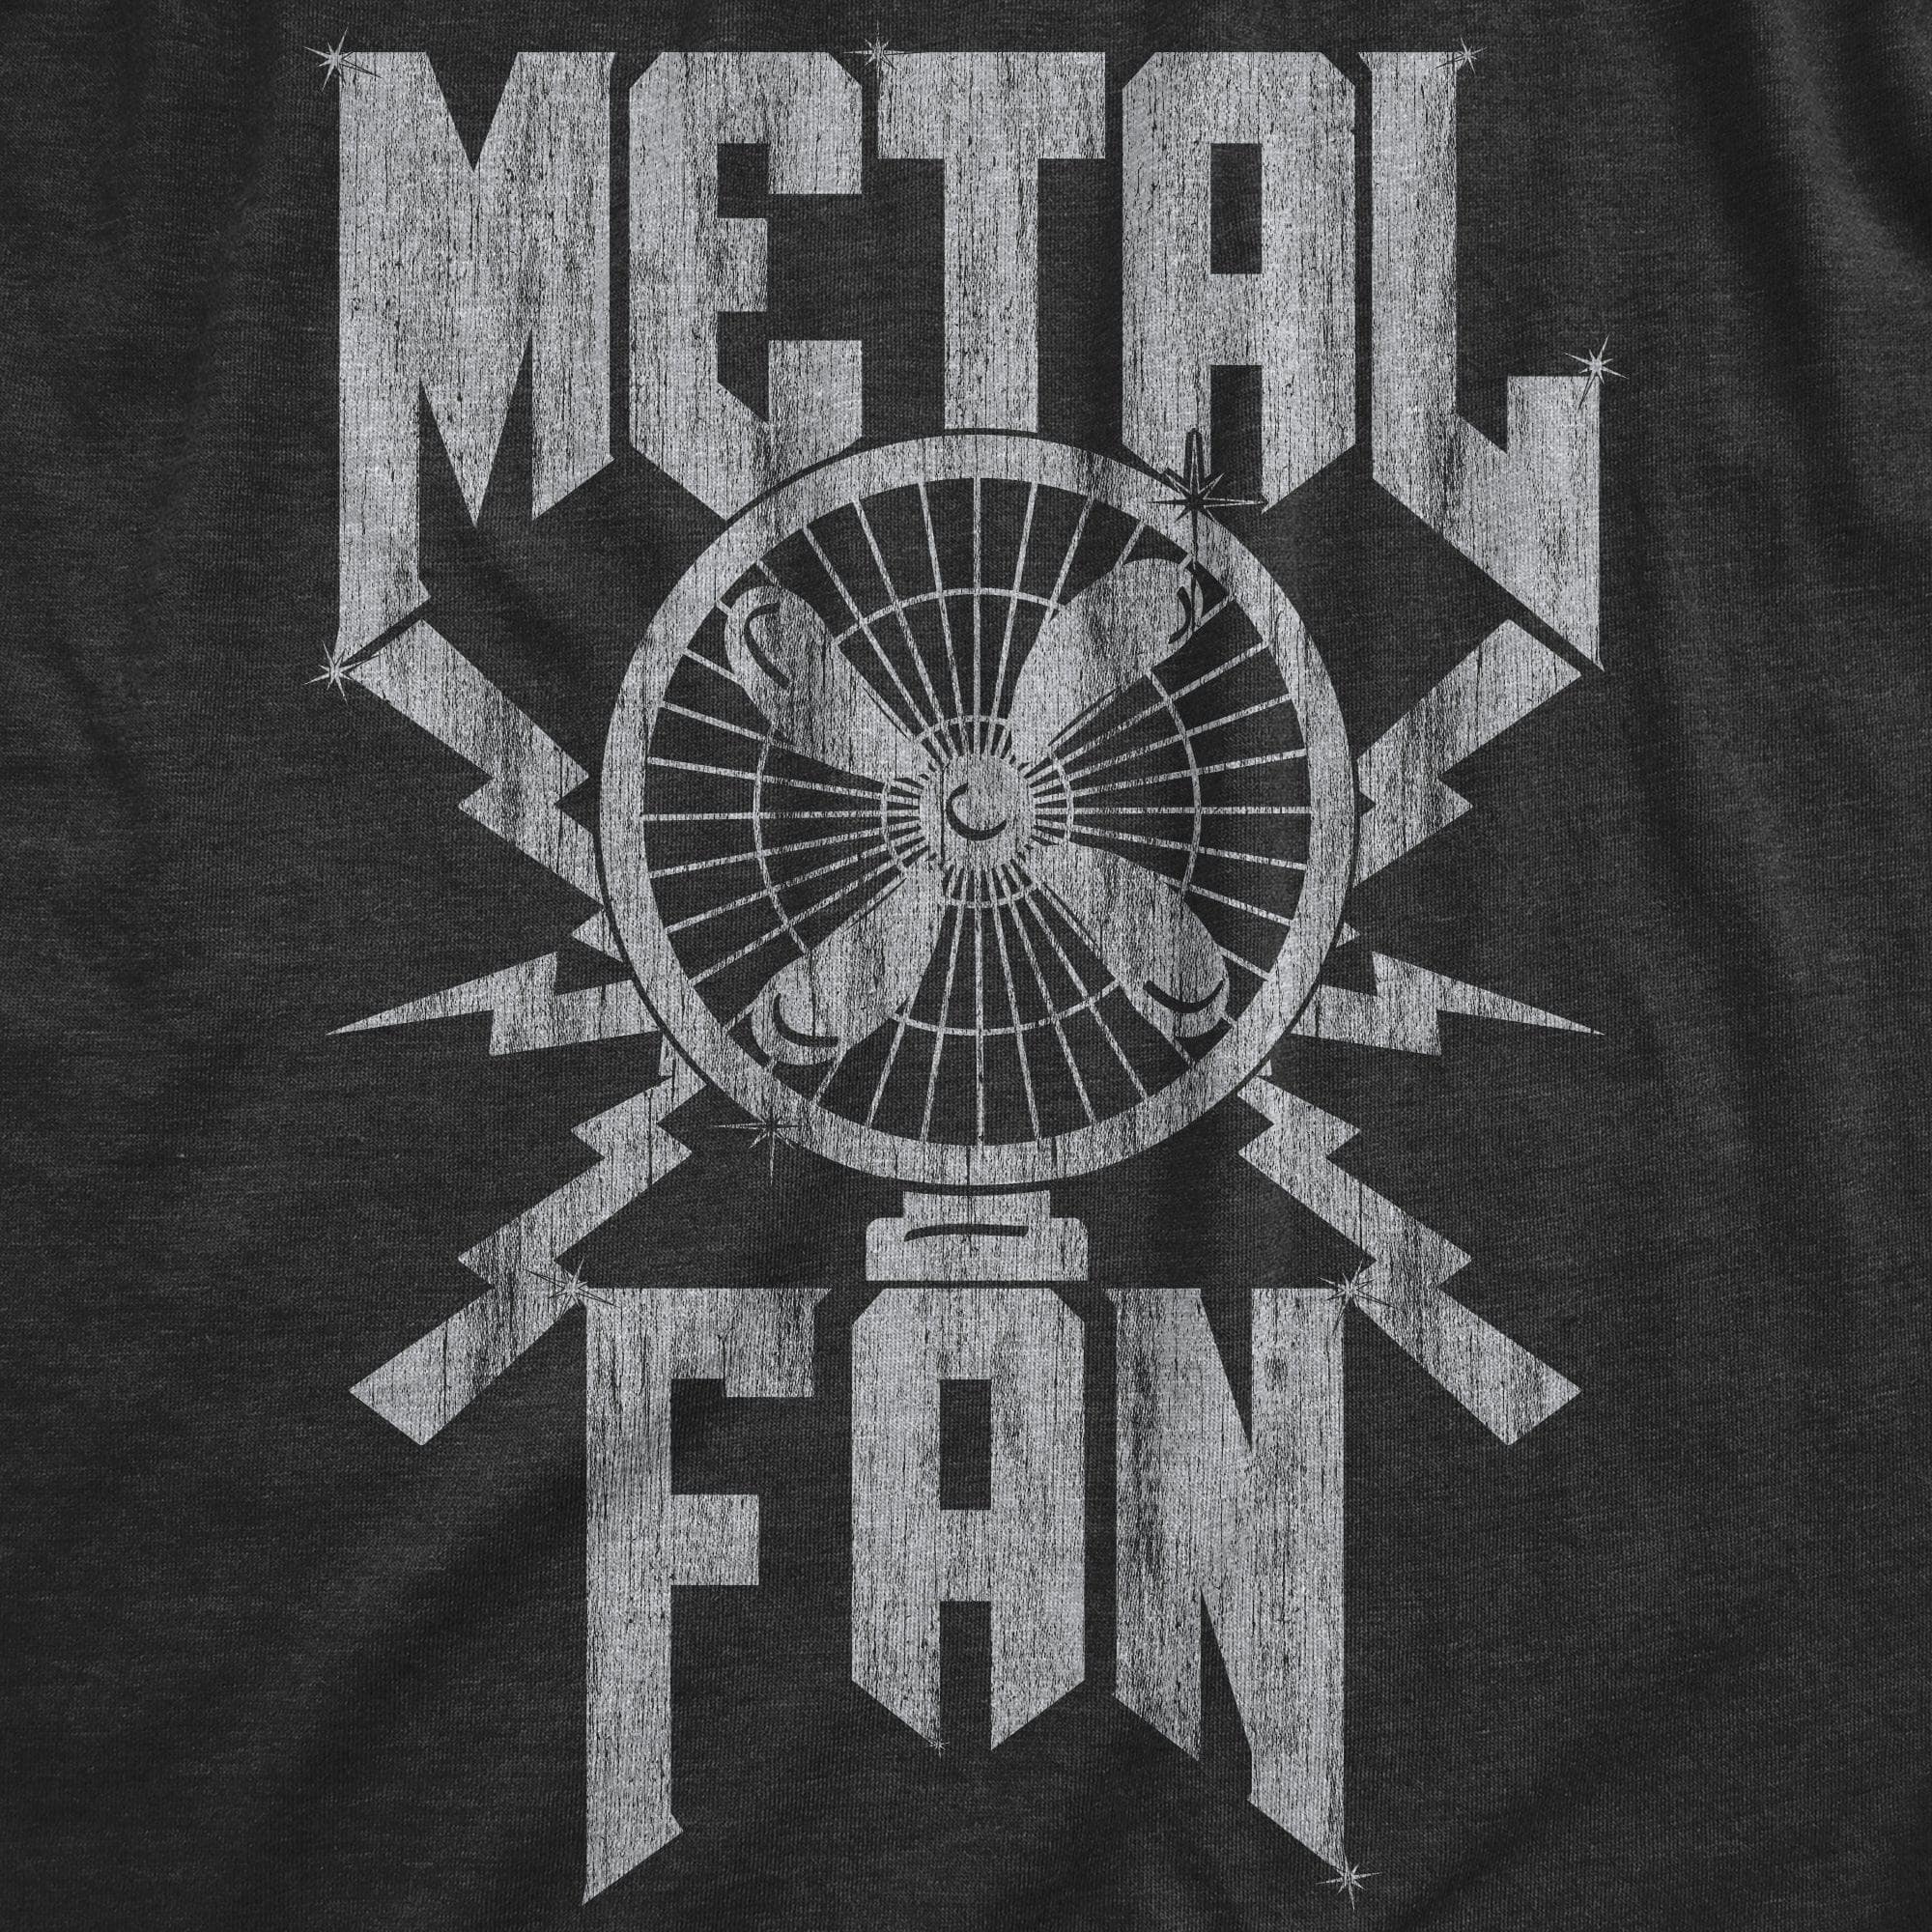 Metal Fan Men's Tshirt  -  Crazy Dog T-Shirts